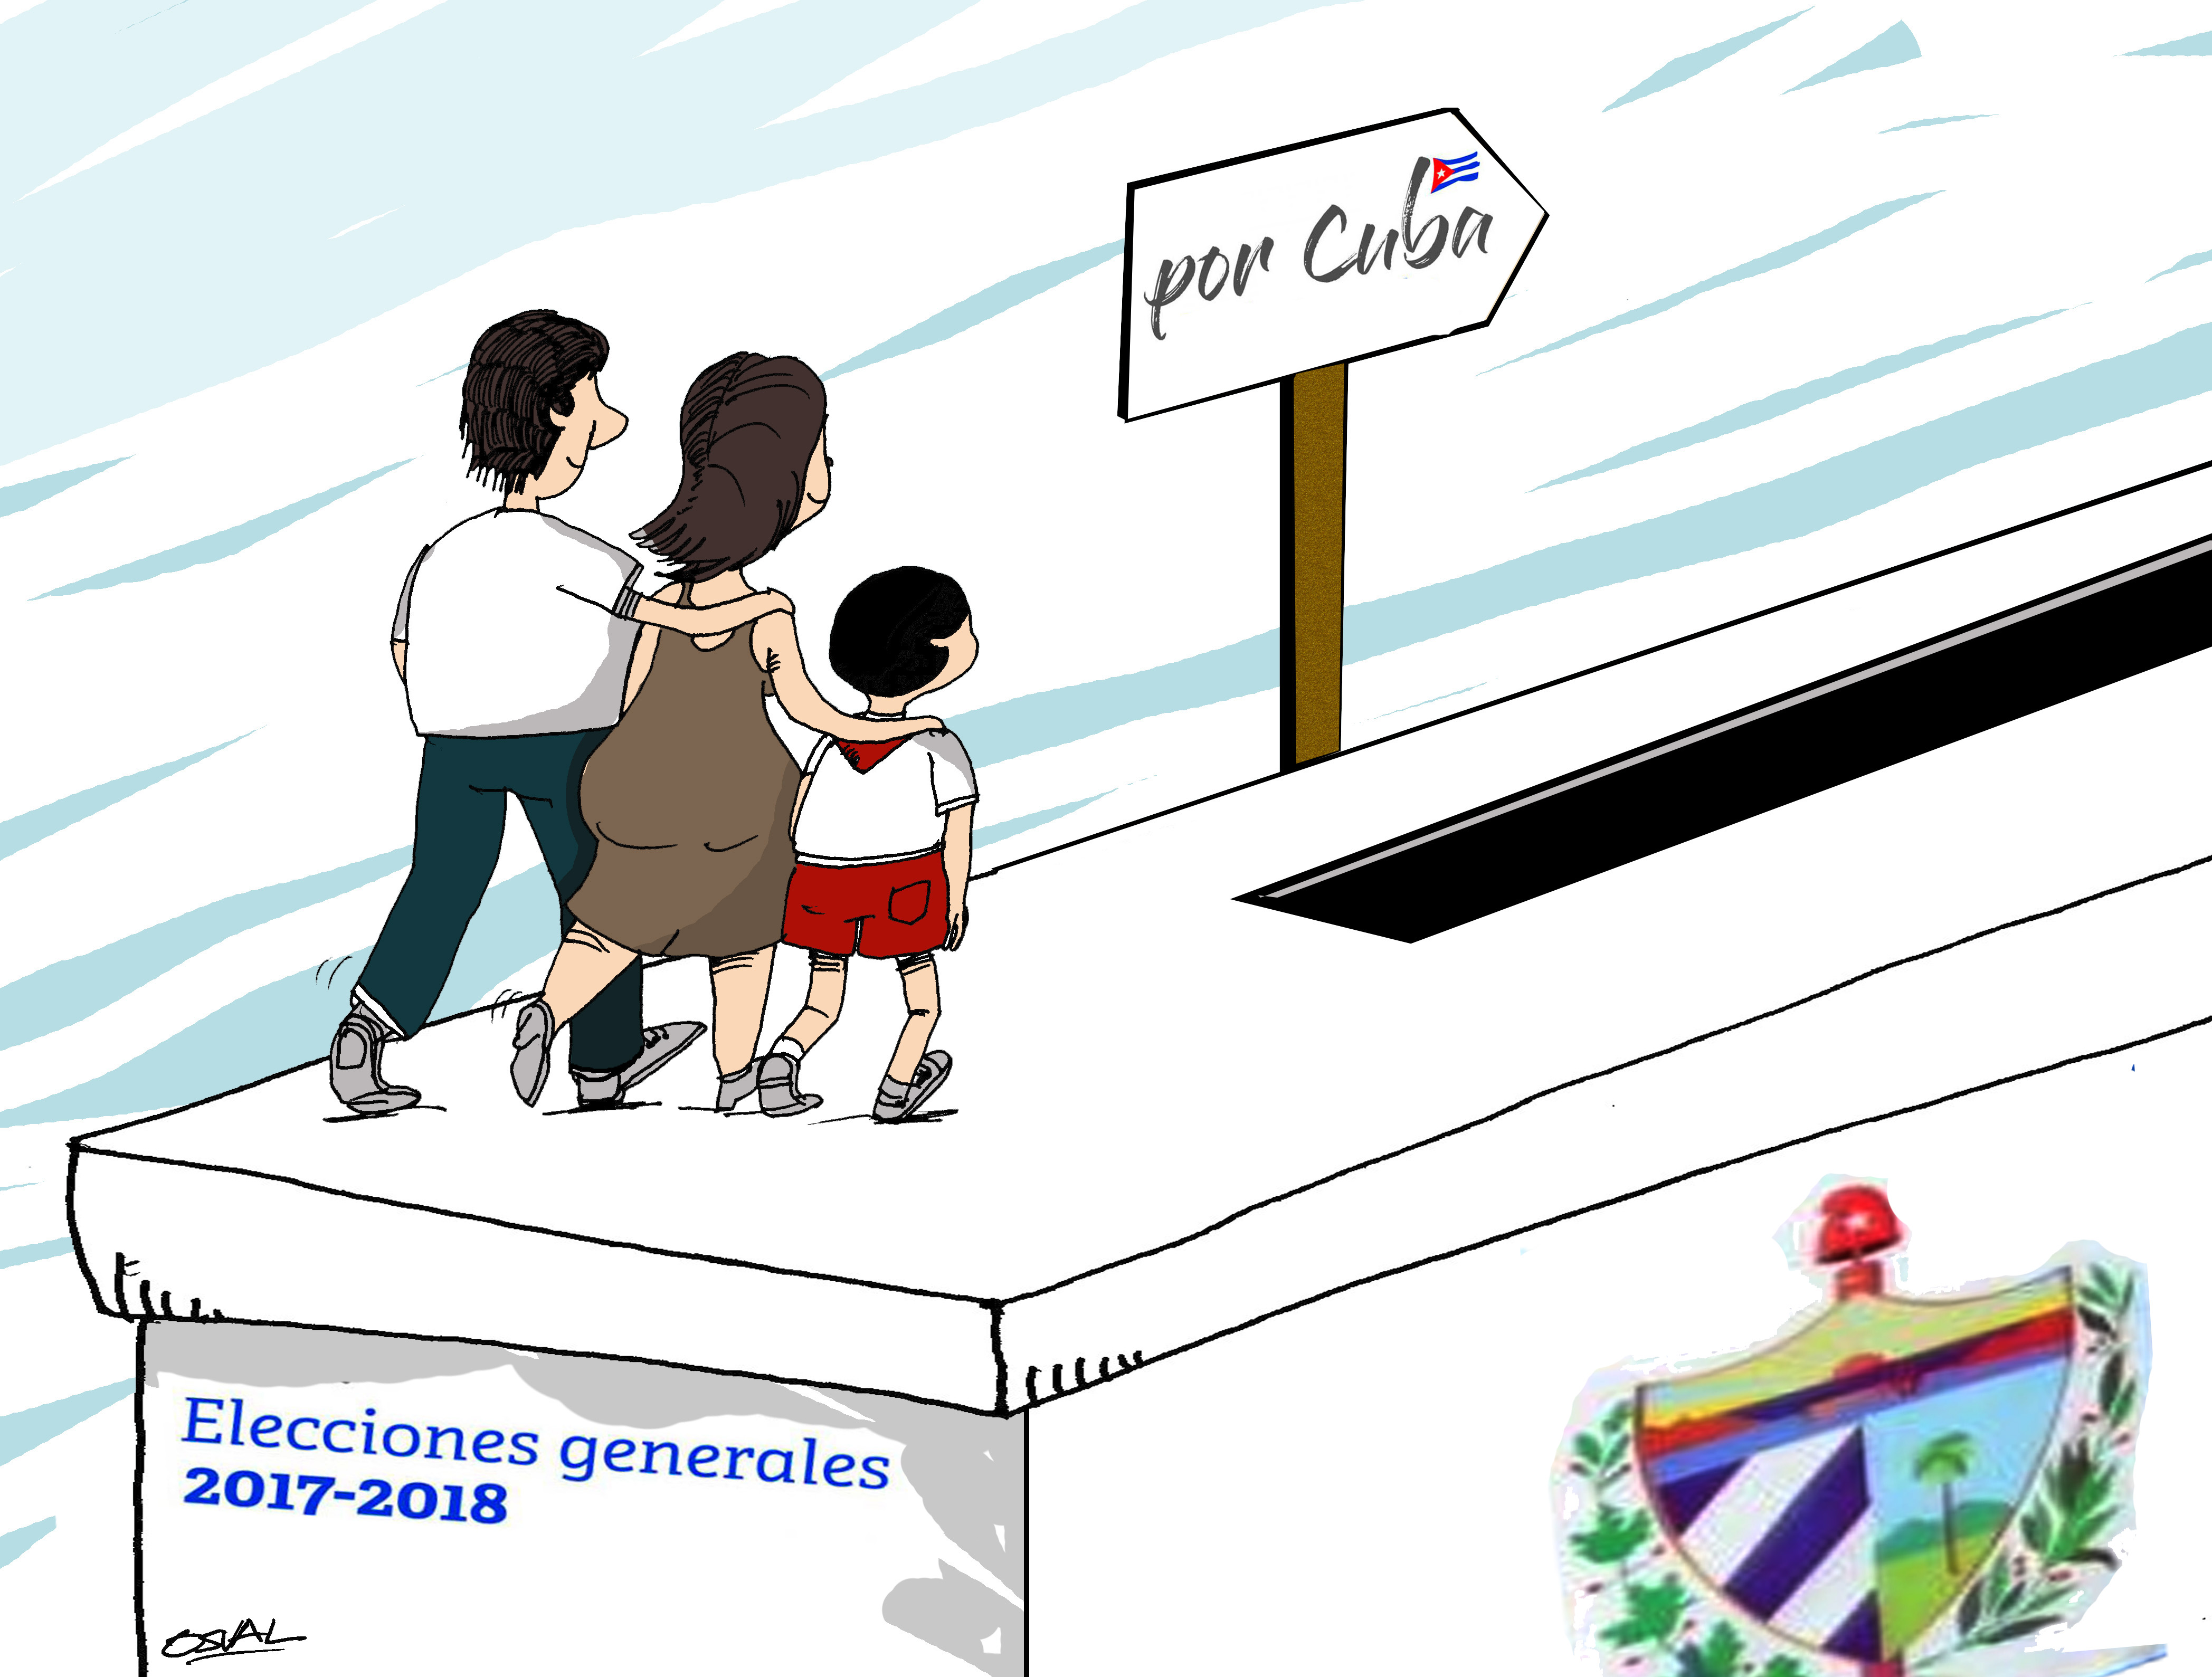 Resultado de imagen para caricarurta de cubanos votando